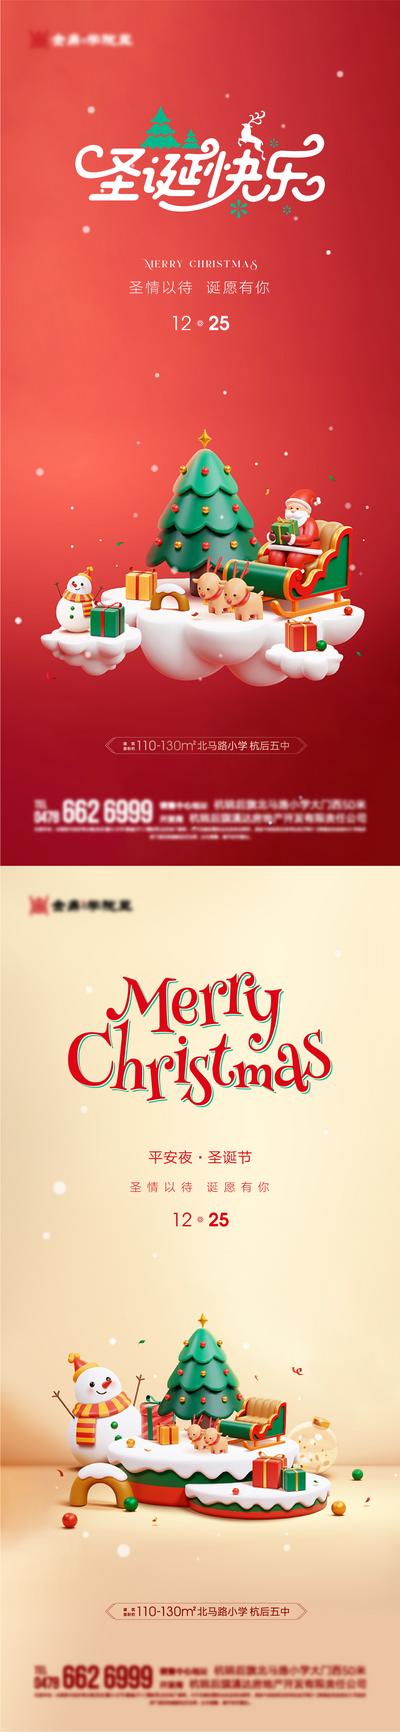 南门网 海报 西方节日 圣诞节 平安夜 圣诞树 雪人 系列